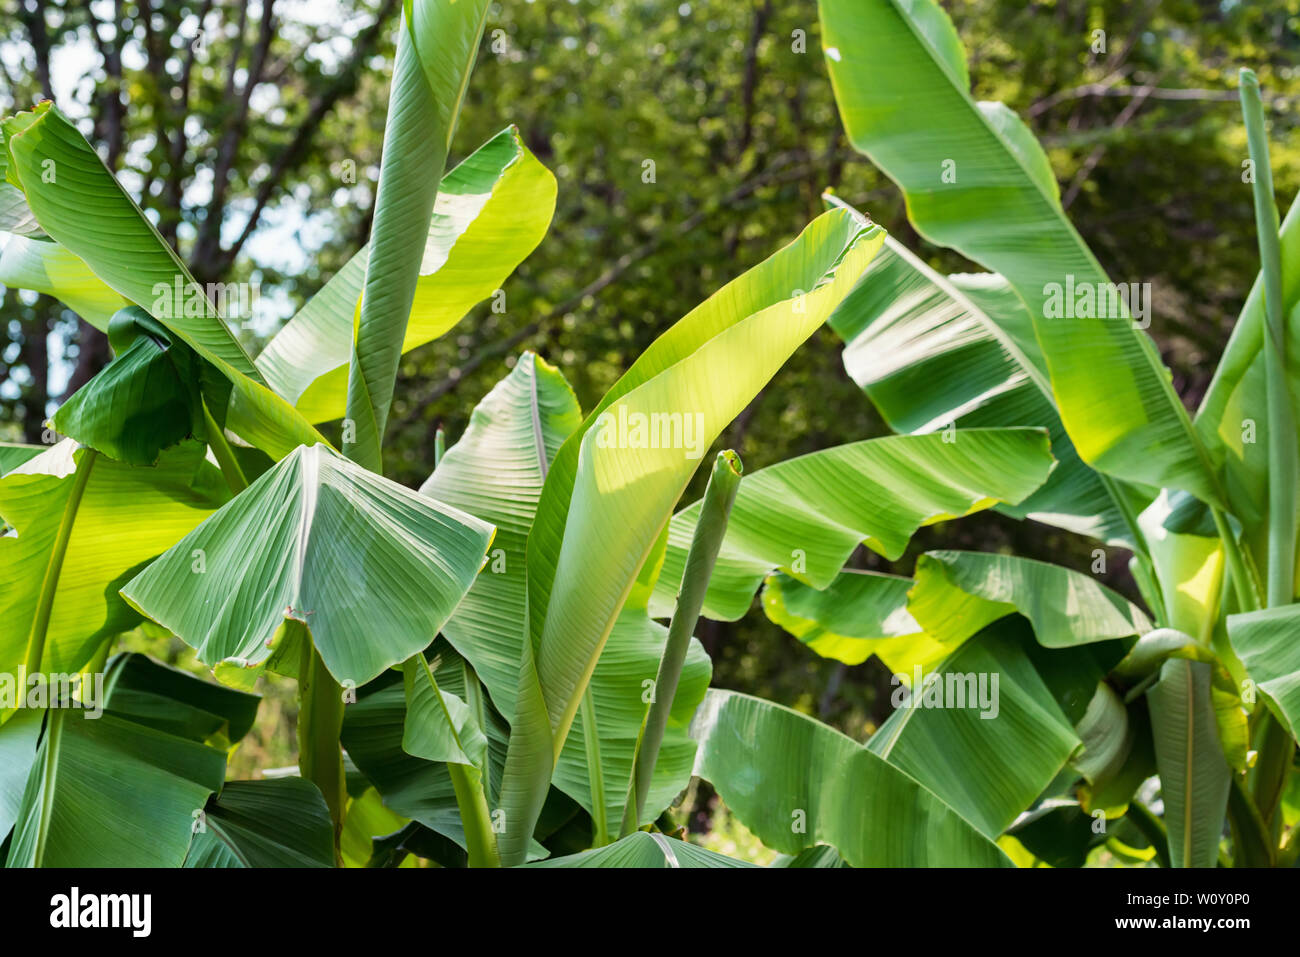 Chiudere il verde delle foglie di banana tree growinf in posizione di parcheggio Foto Stock